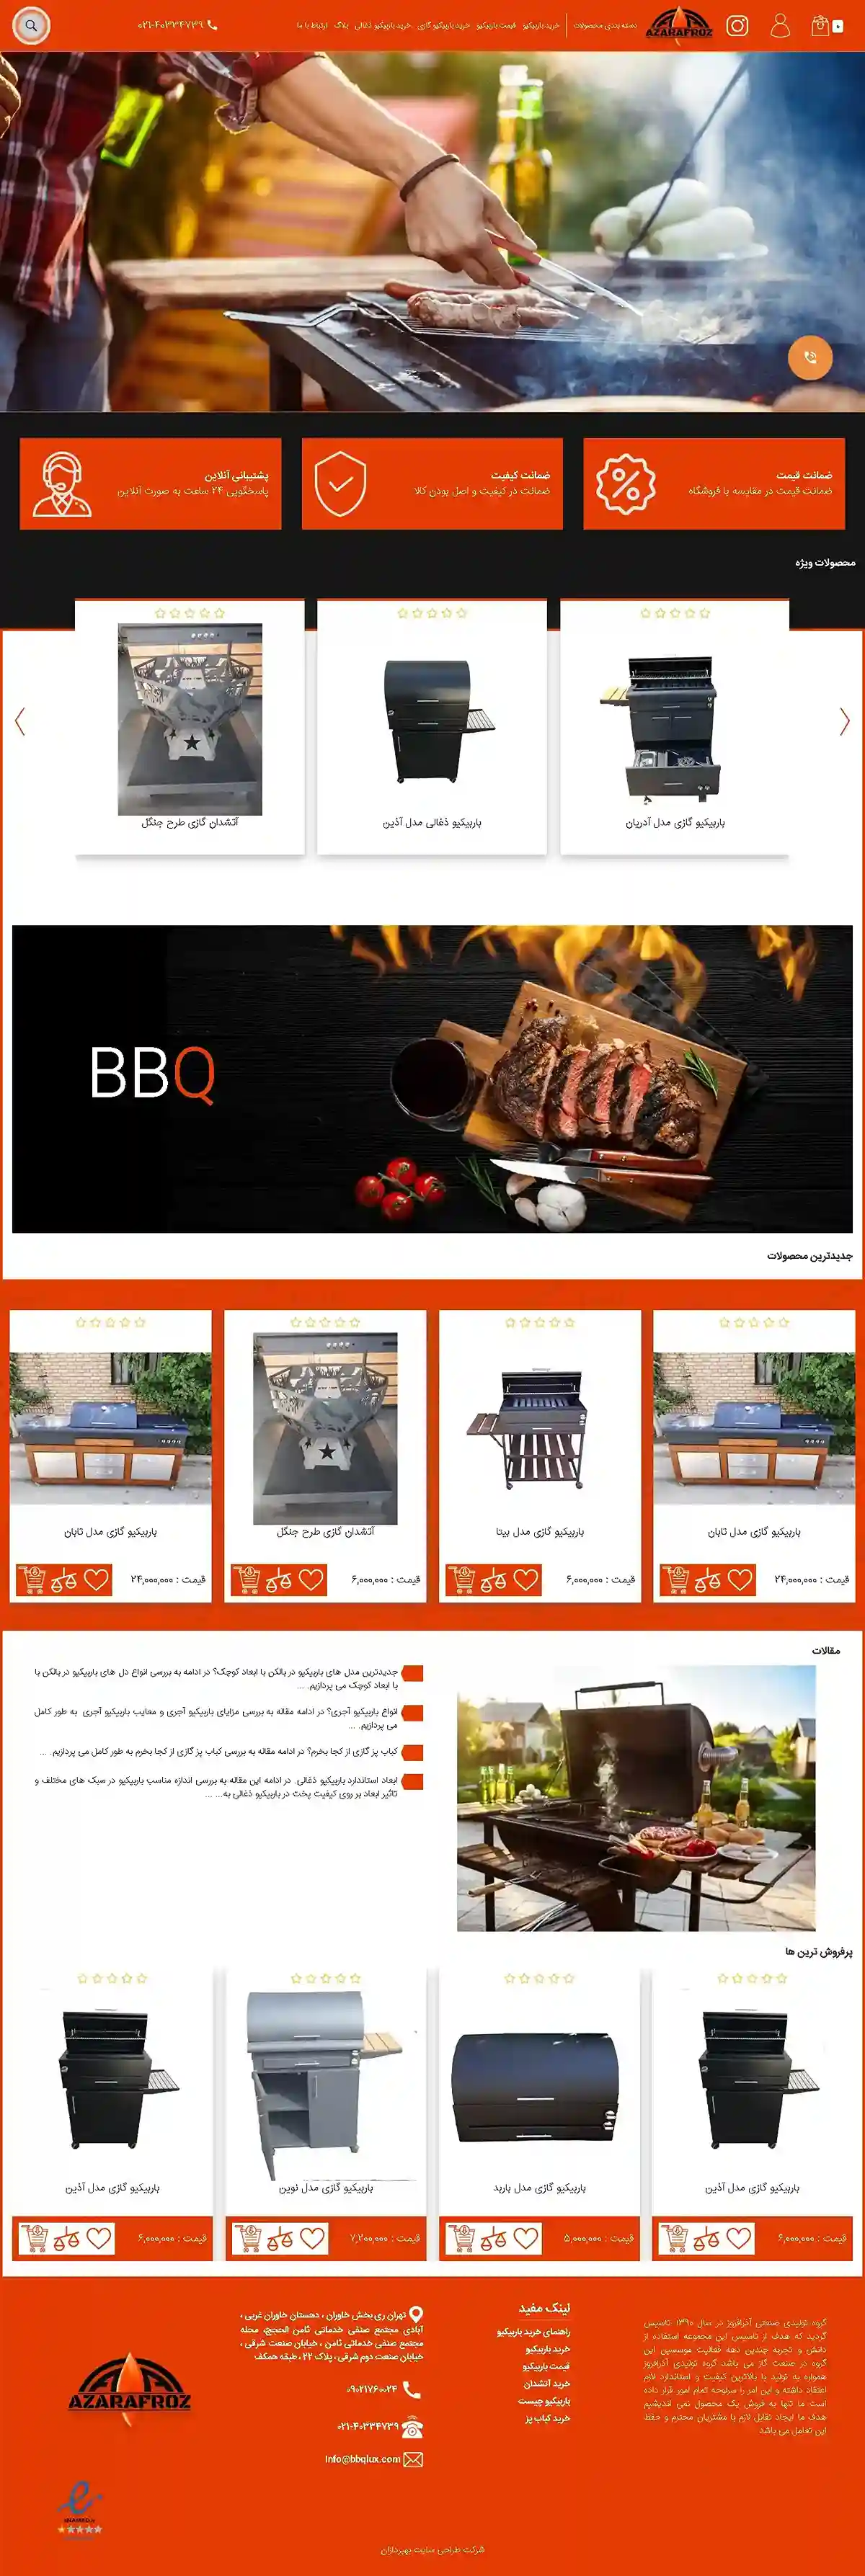 طراحی سایت فروشگاه اینترنتی آذر افروز